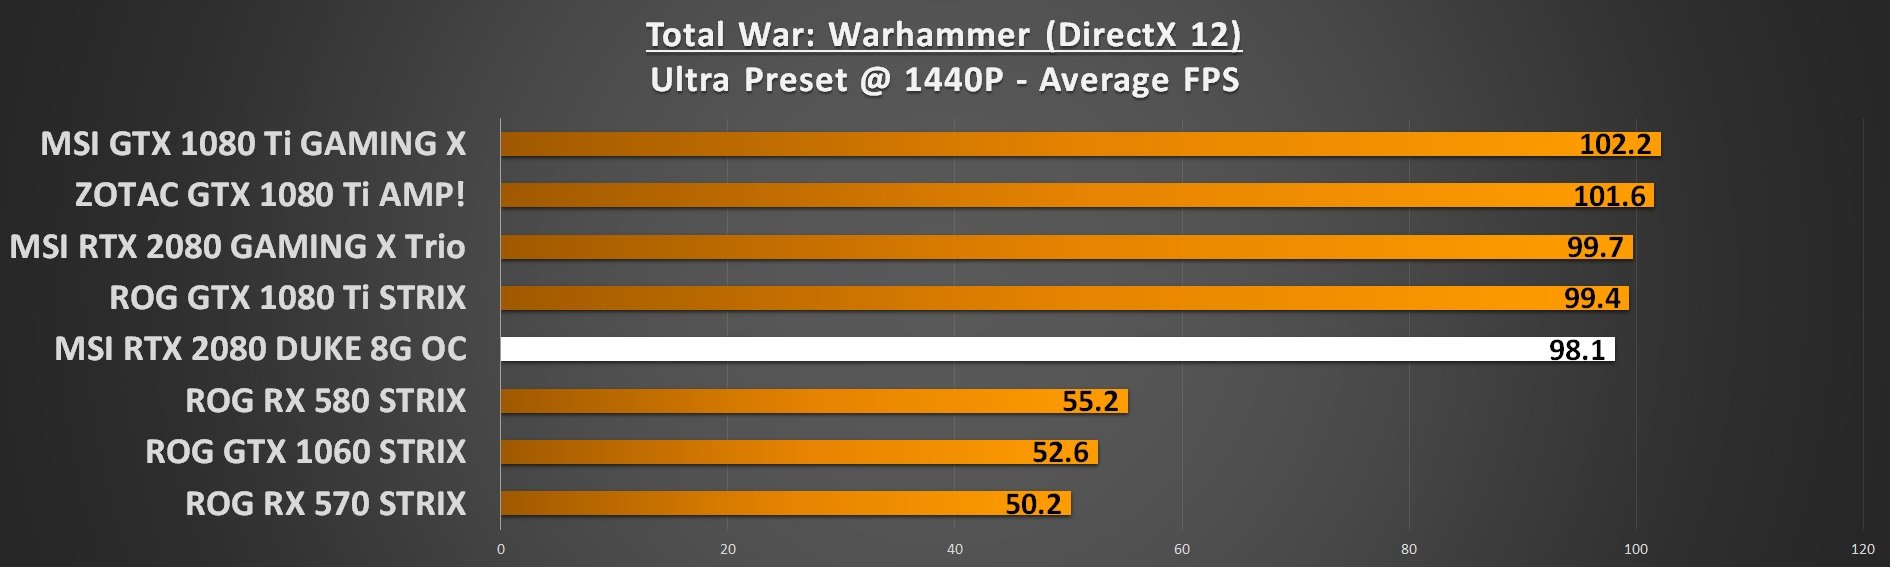 Warhammer 1440p